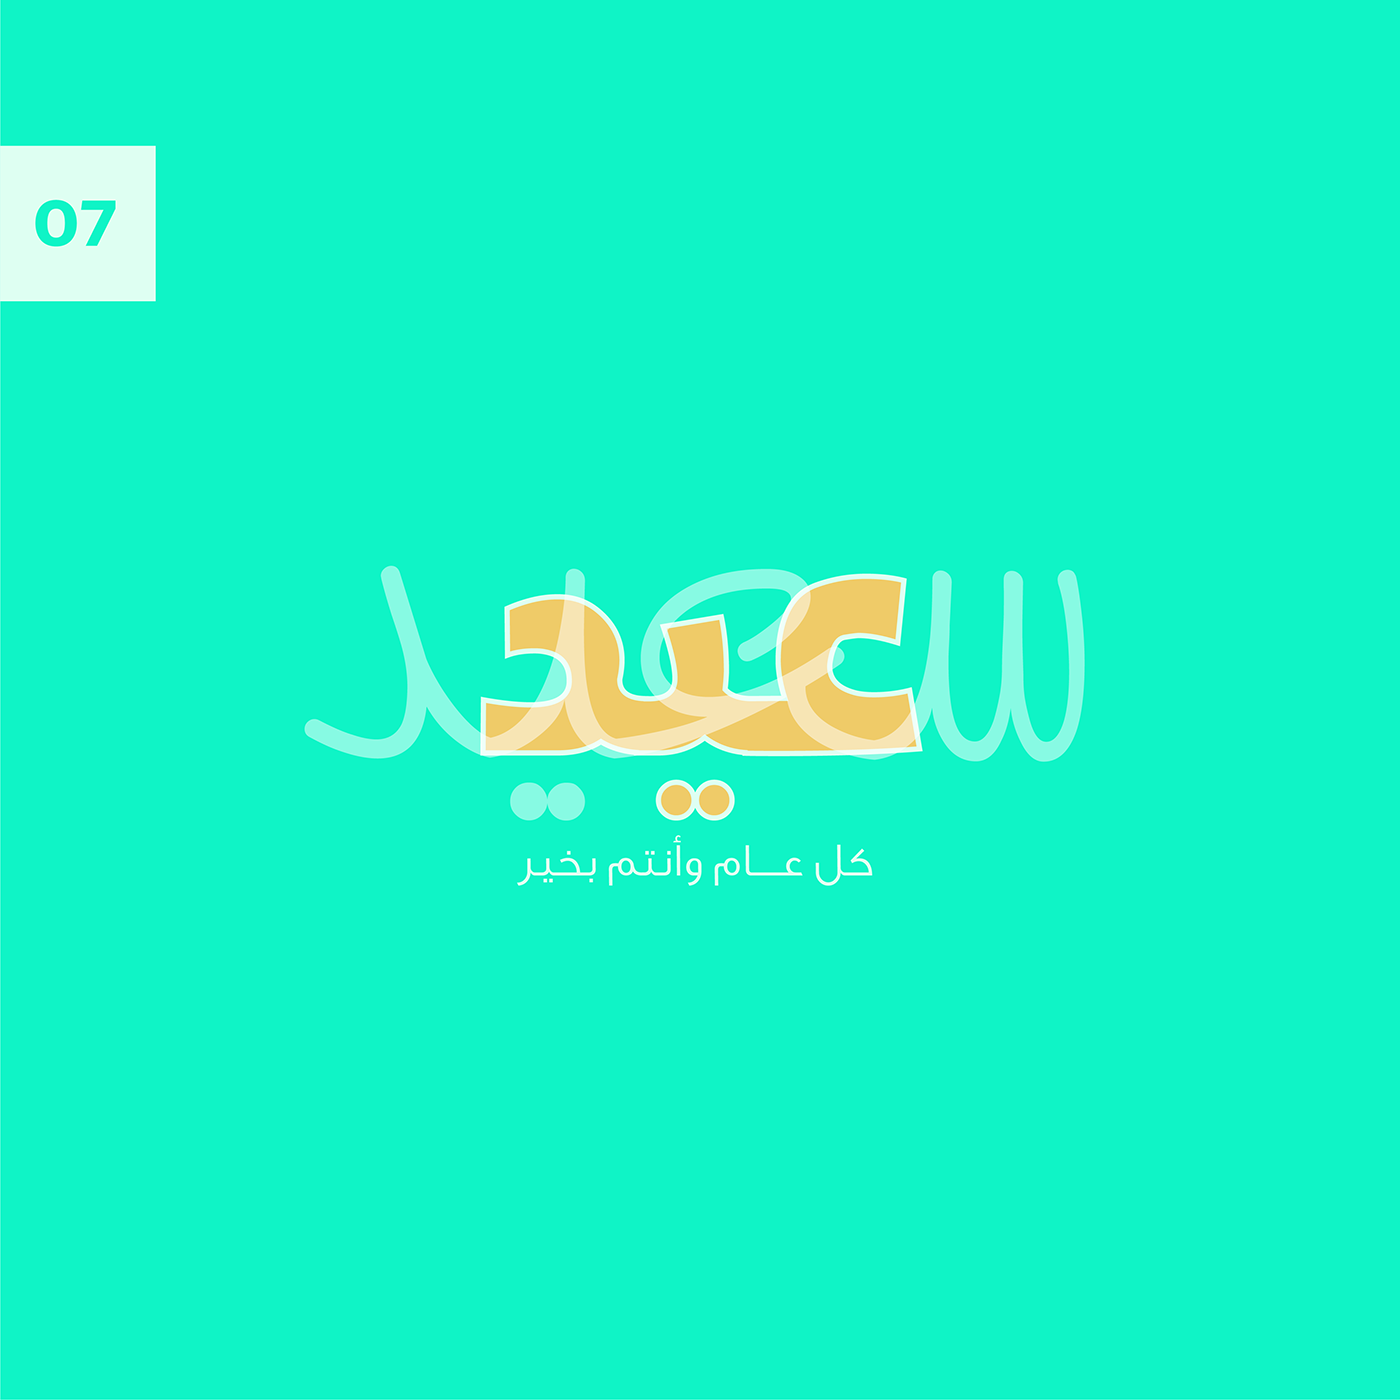 arabic arabic calligraphy Calligraphy   Eid eid mubarak free islamic muslim Socialmedia